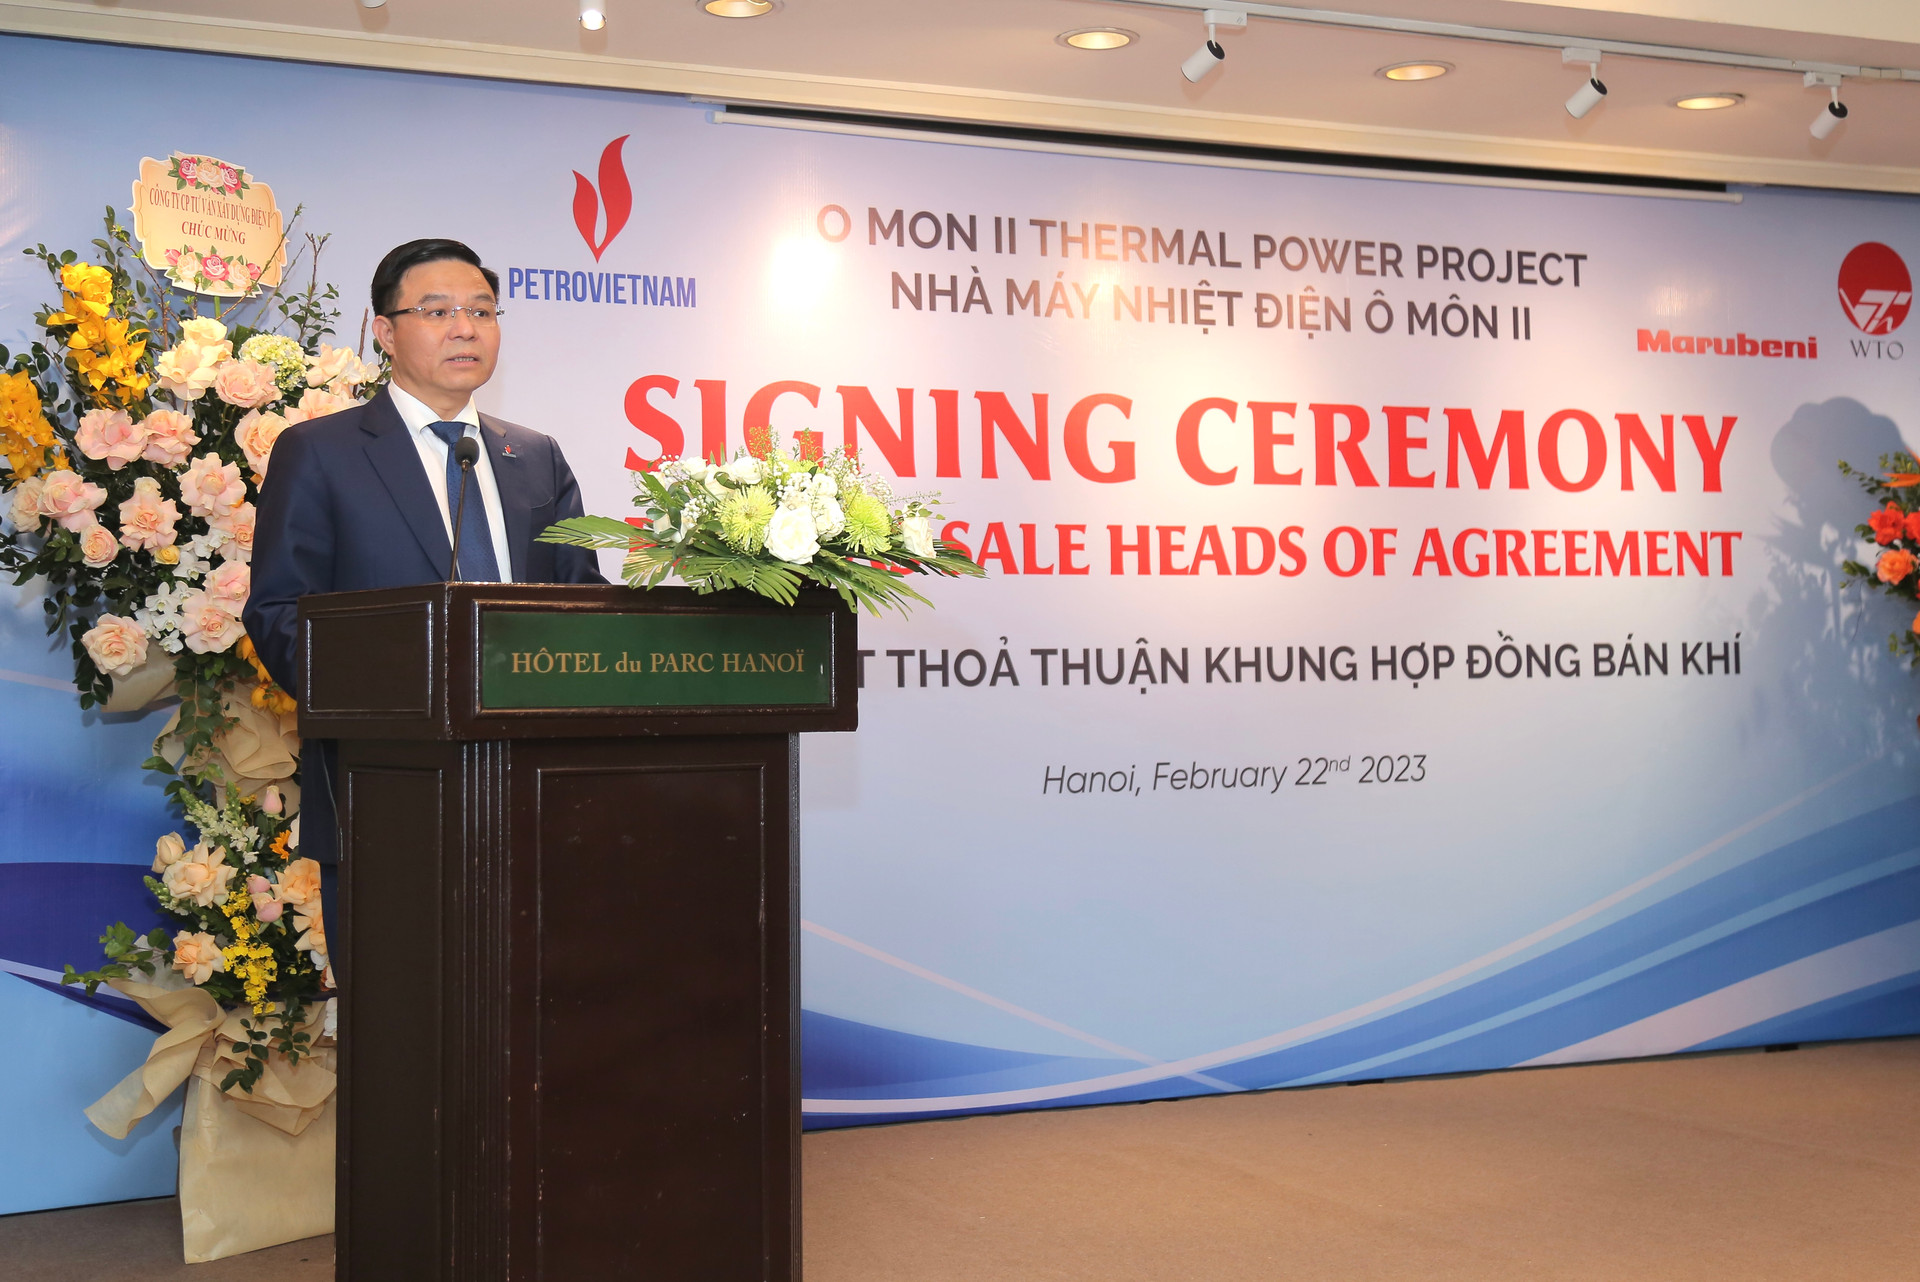 Petrovietnam ký kết thỏa thuận khung Hợp đồng bán khí cho Dự án Nhà máy nhiệt điện Ô Môn II